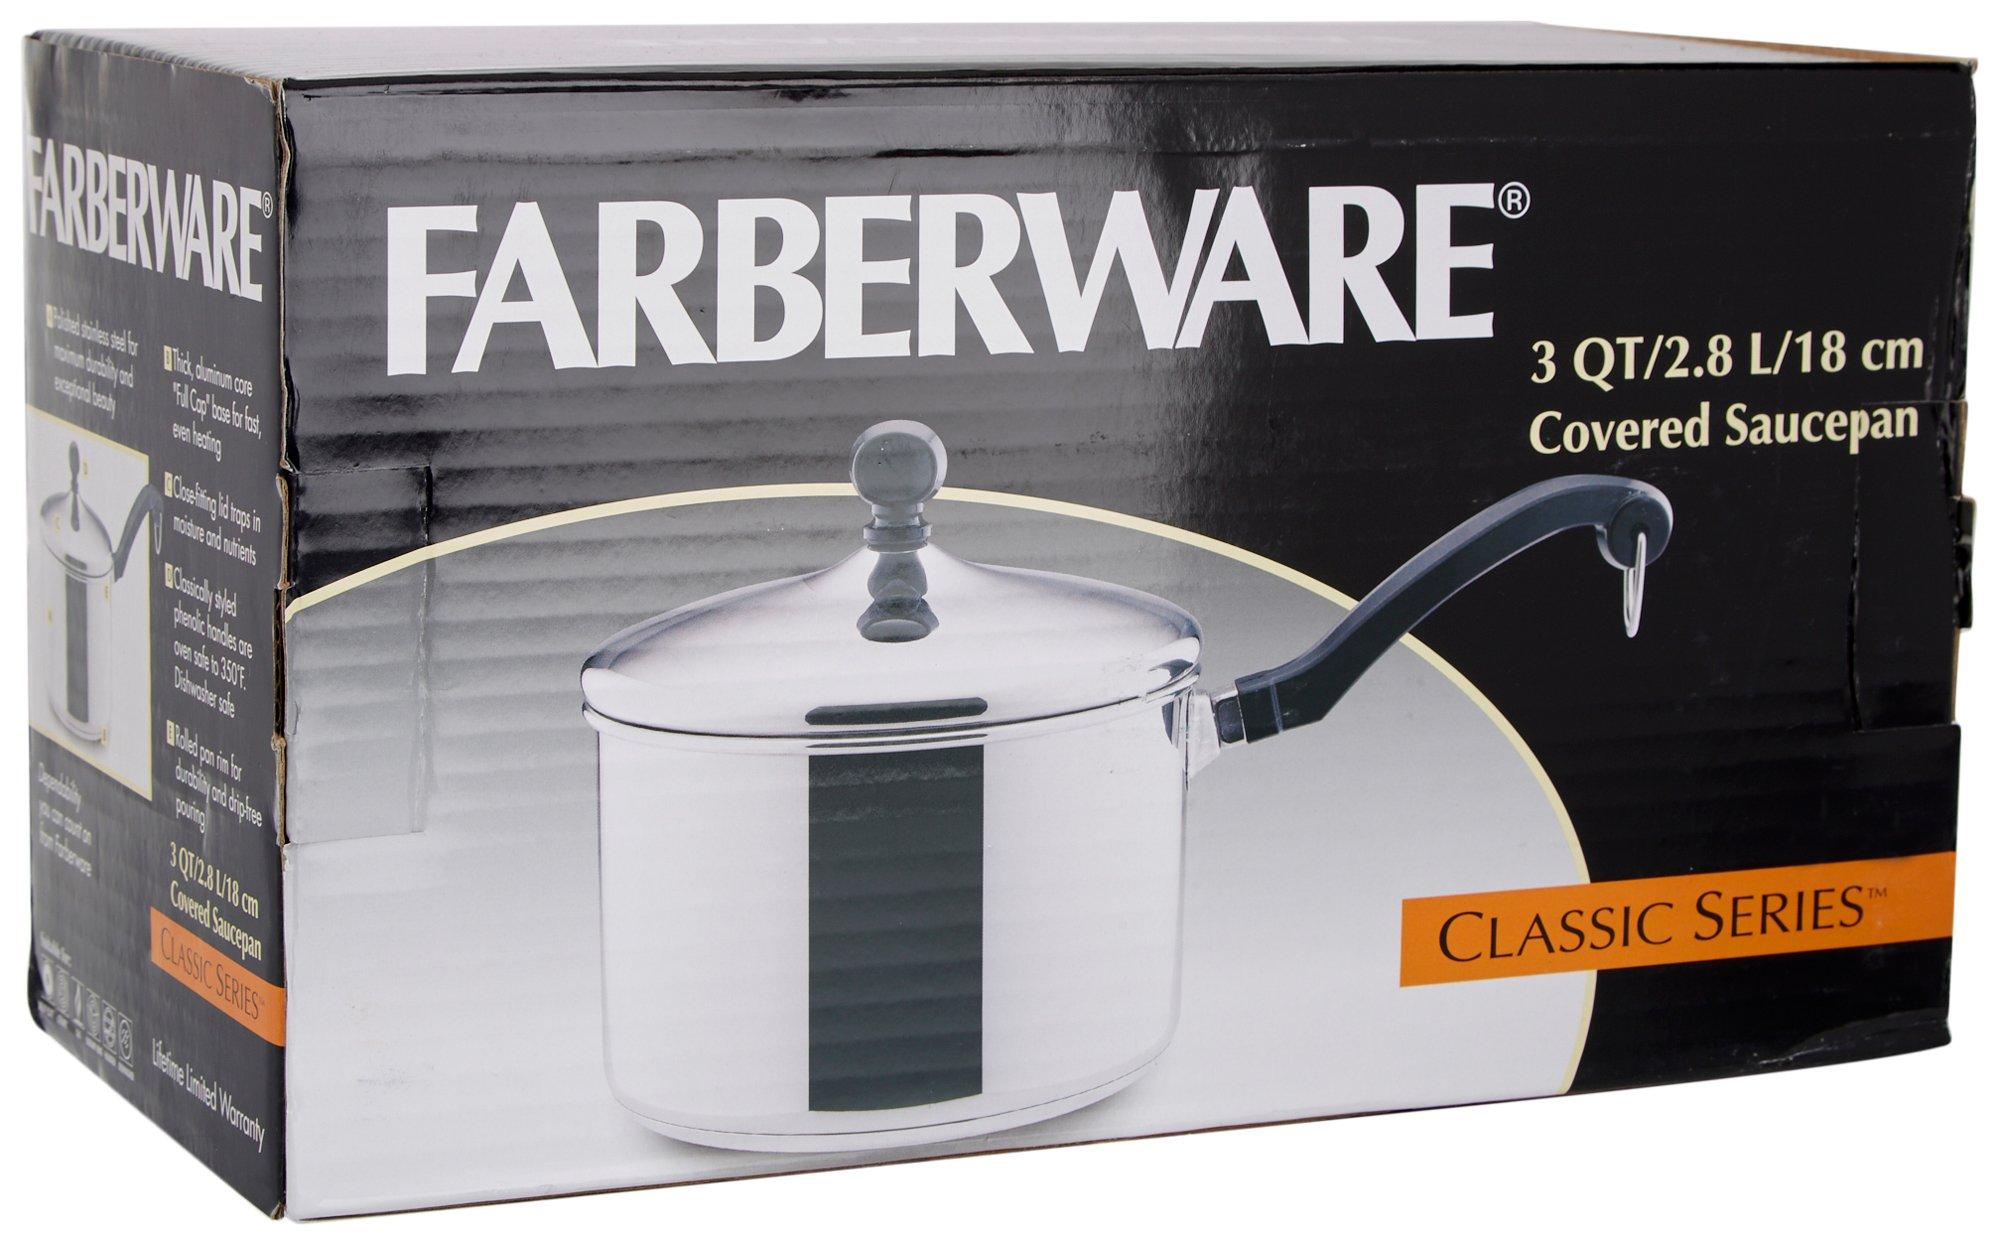 Farberware 3 Qt Saucepan With Lid